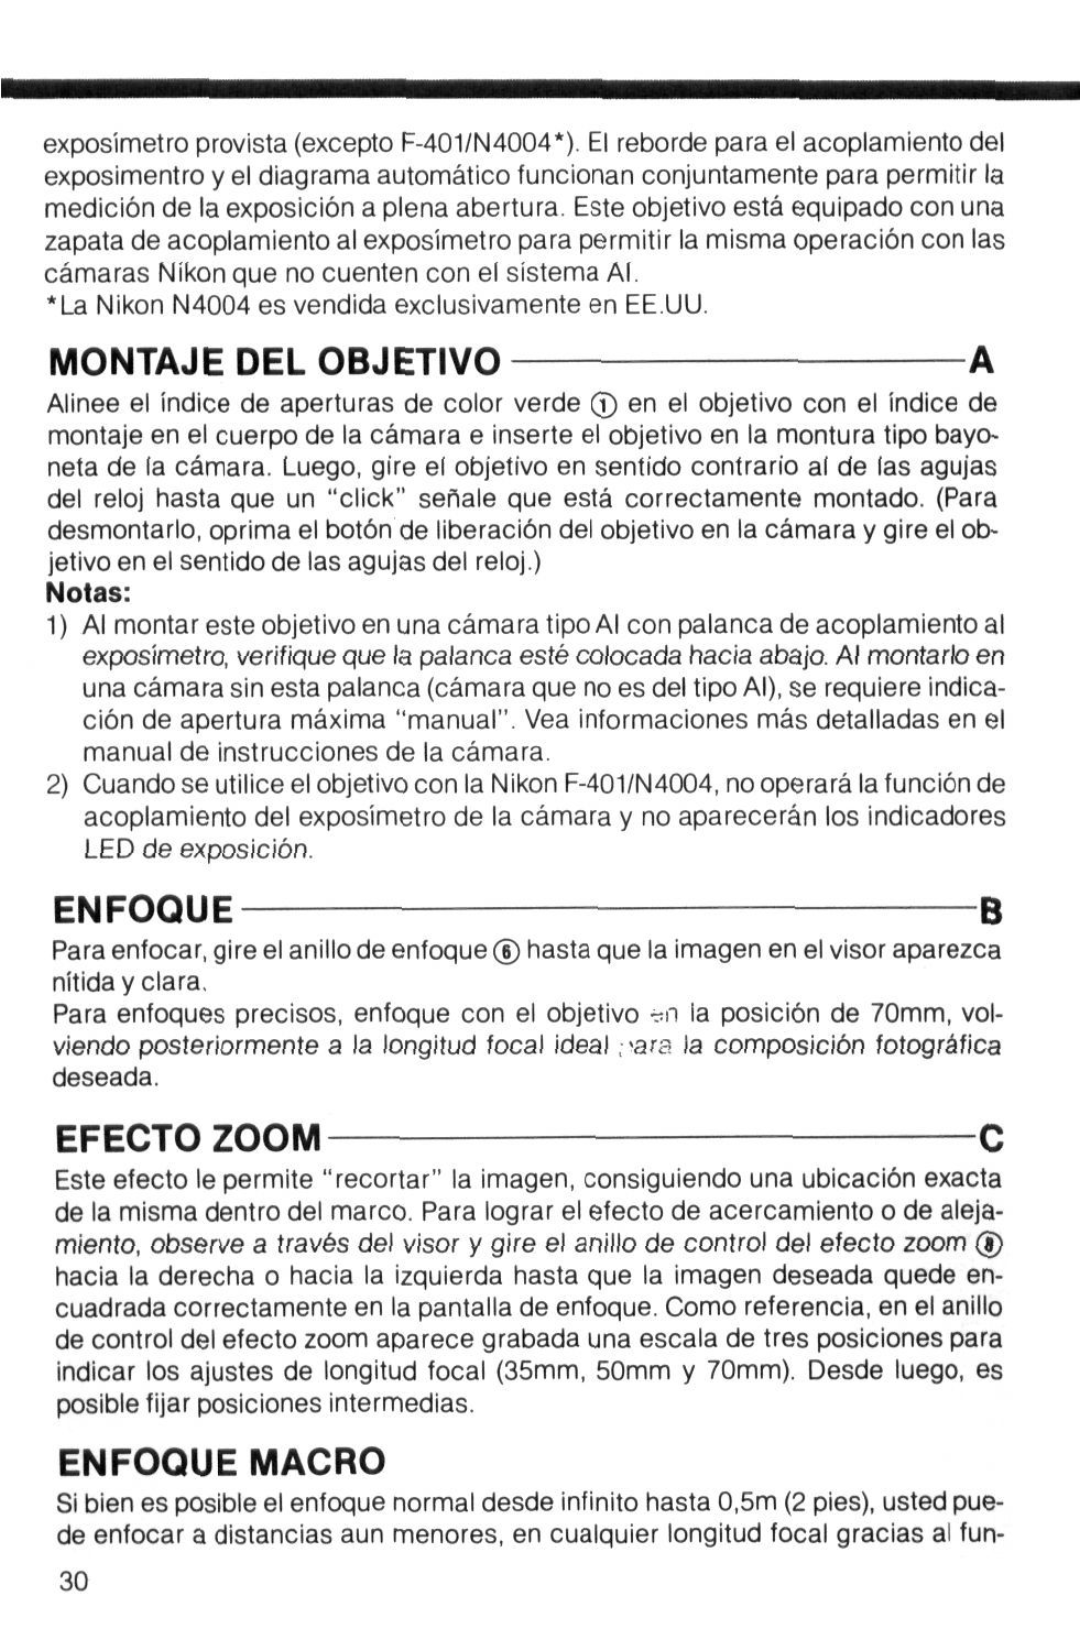 Nikon instruction manual Montaje Del Objetivo, Enfoqueb, Efecto Zoom, Enfoque Macro, Notas 